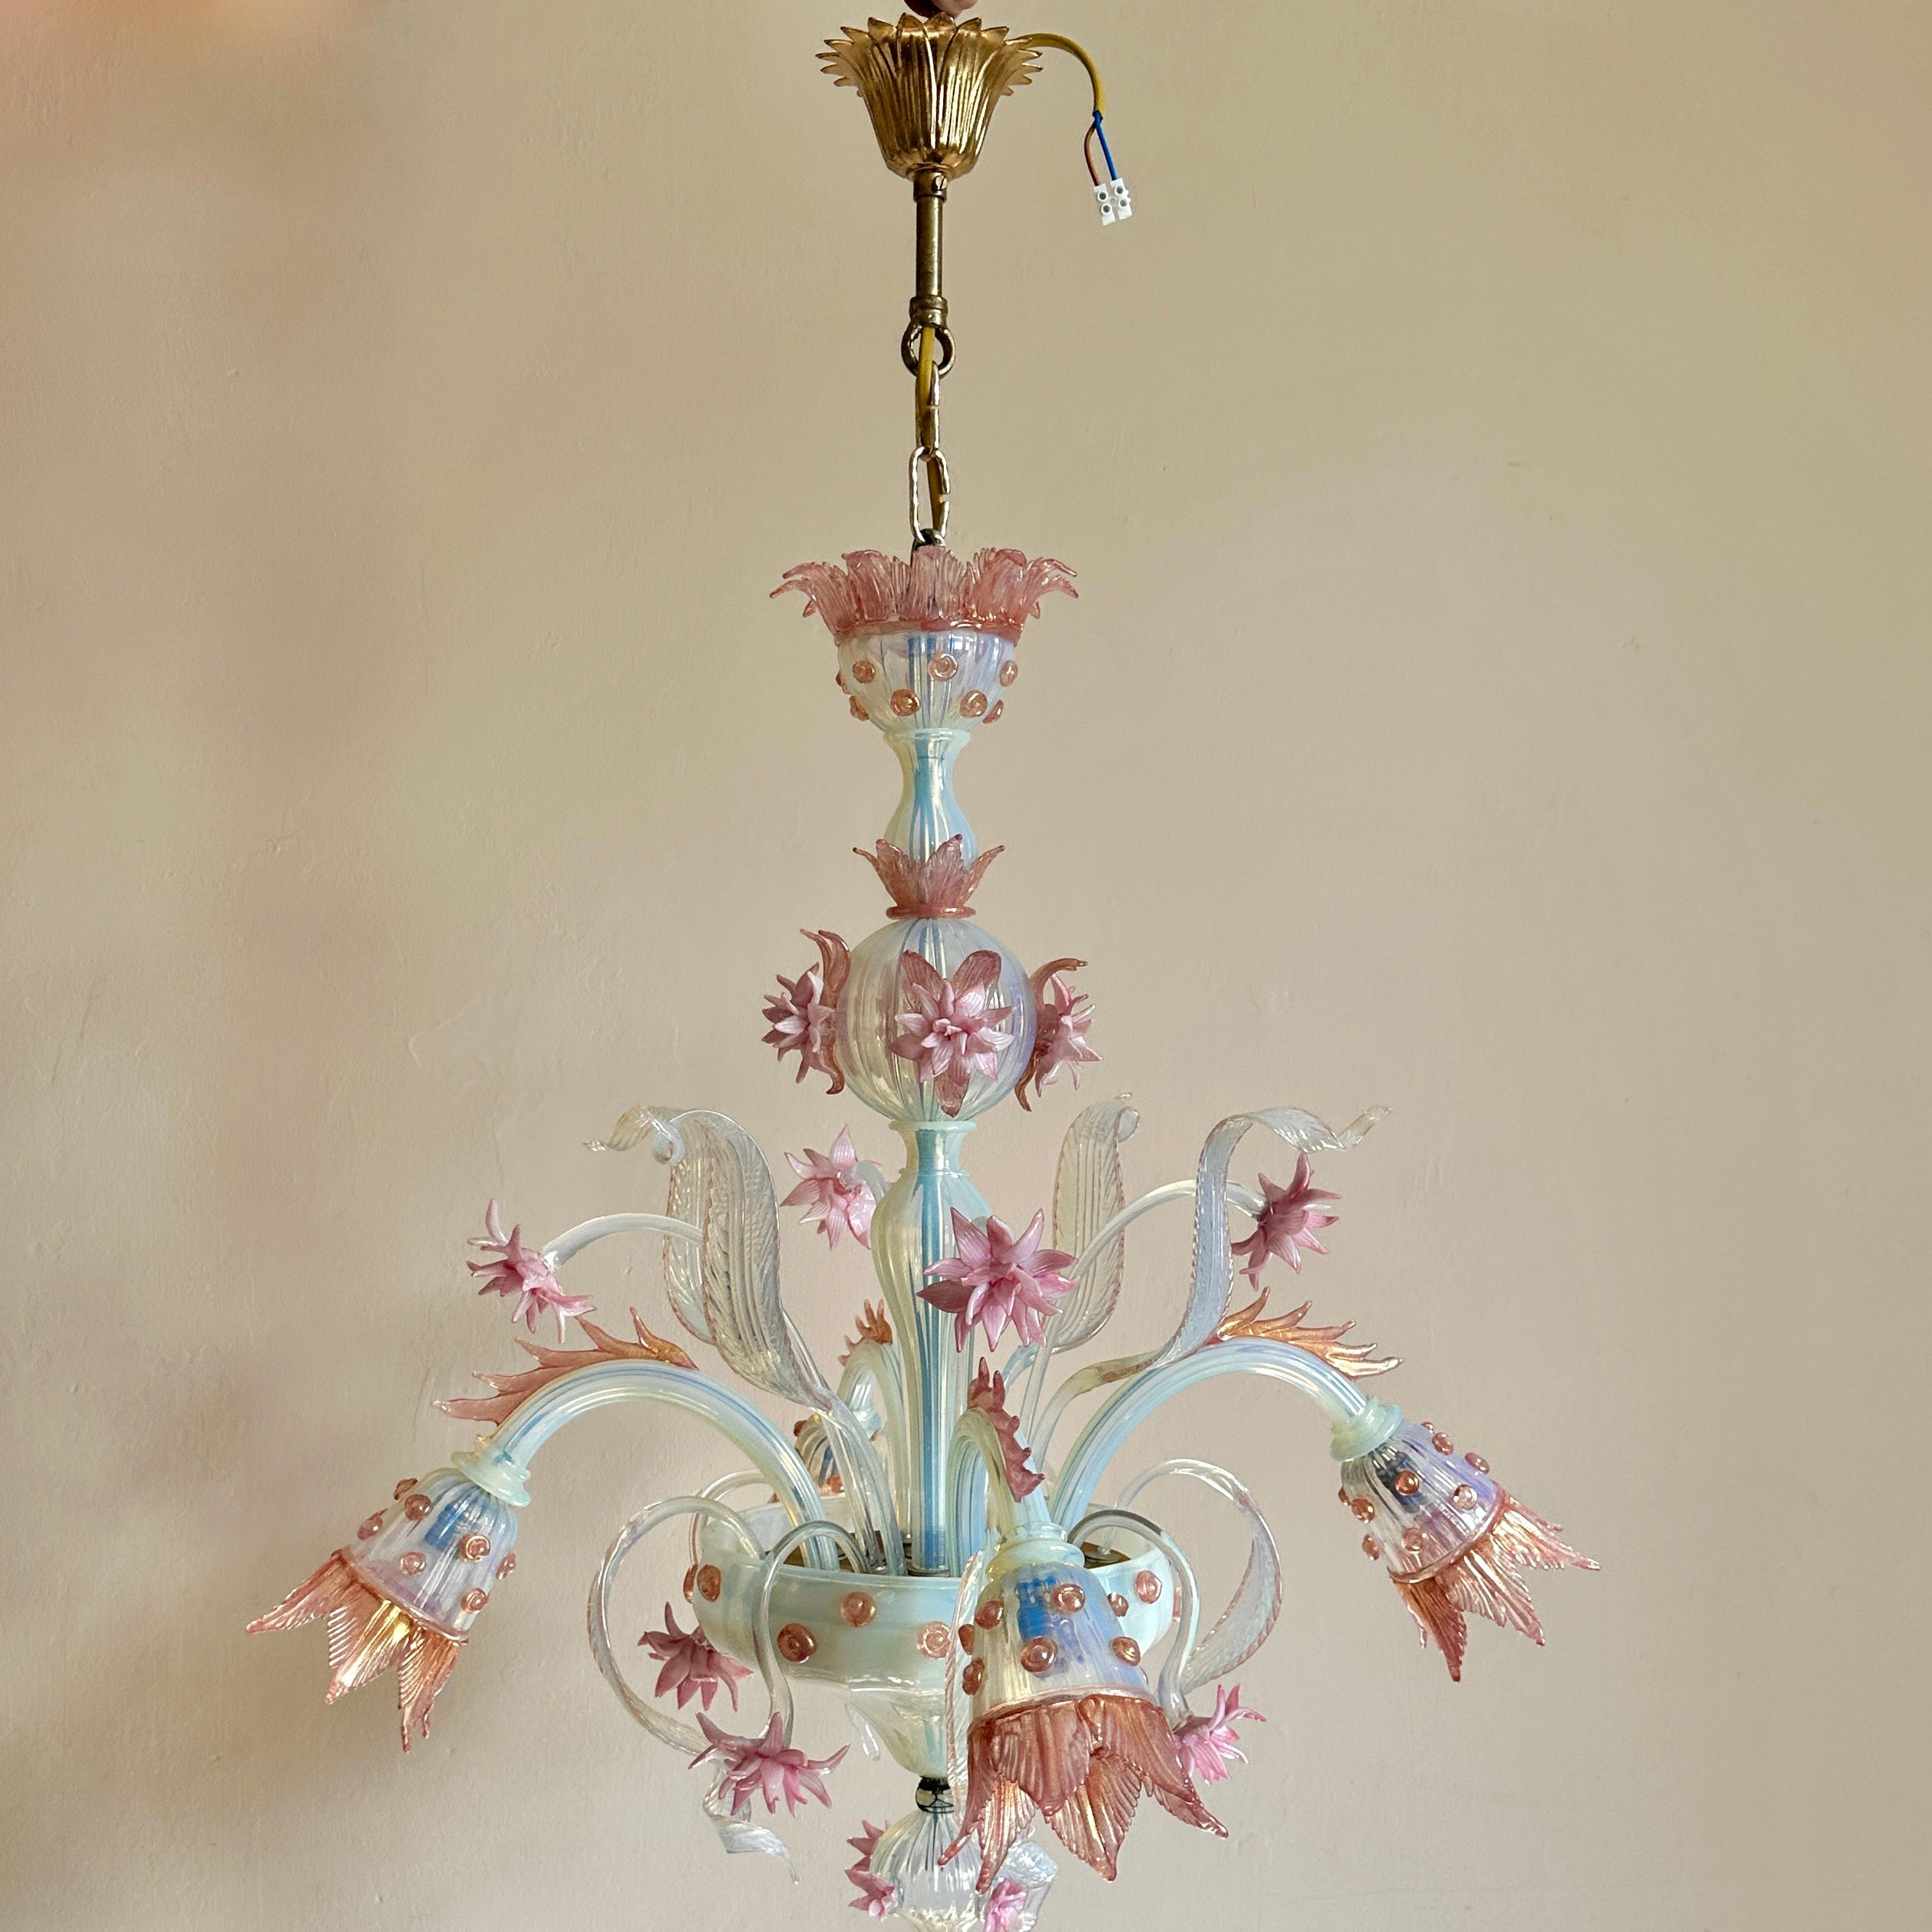 Kronleuchter aus Murano-Opalglas, frühes 20. Jahrhundert.

Außergewöhnliche vierarmige Deckenleuchte aus mundgeblasenem Glas, um 1905. Hergestellt von der berühmten Familie Salviati. Der Kronleuchter befindet sich in einem ausgezeichneten Zustand,